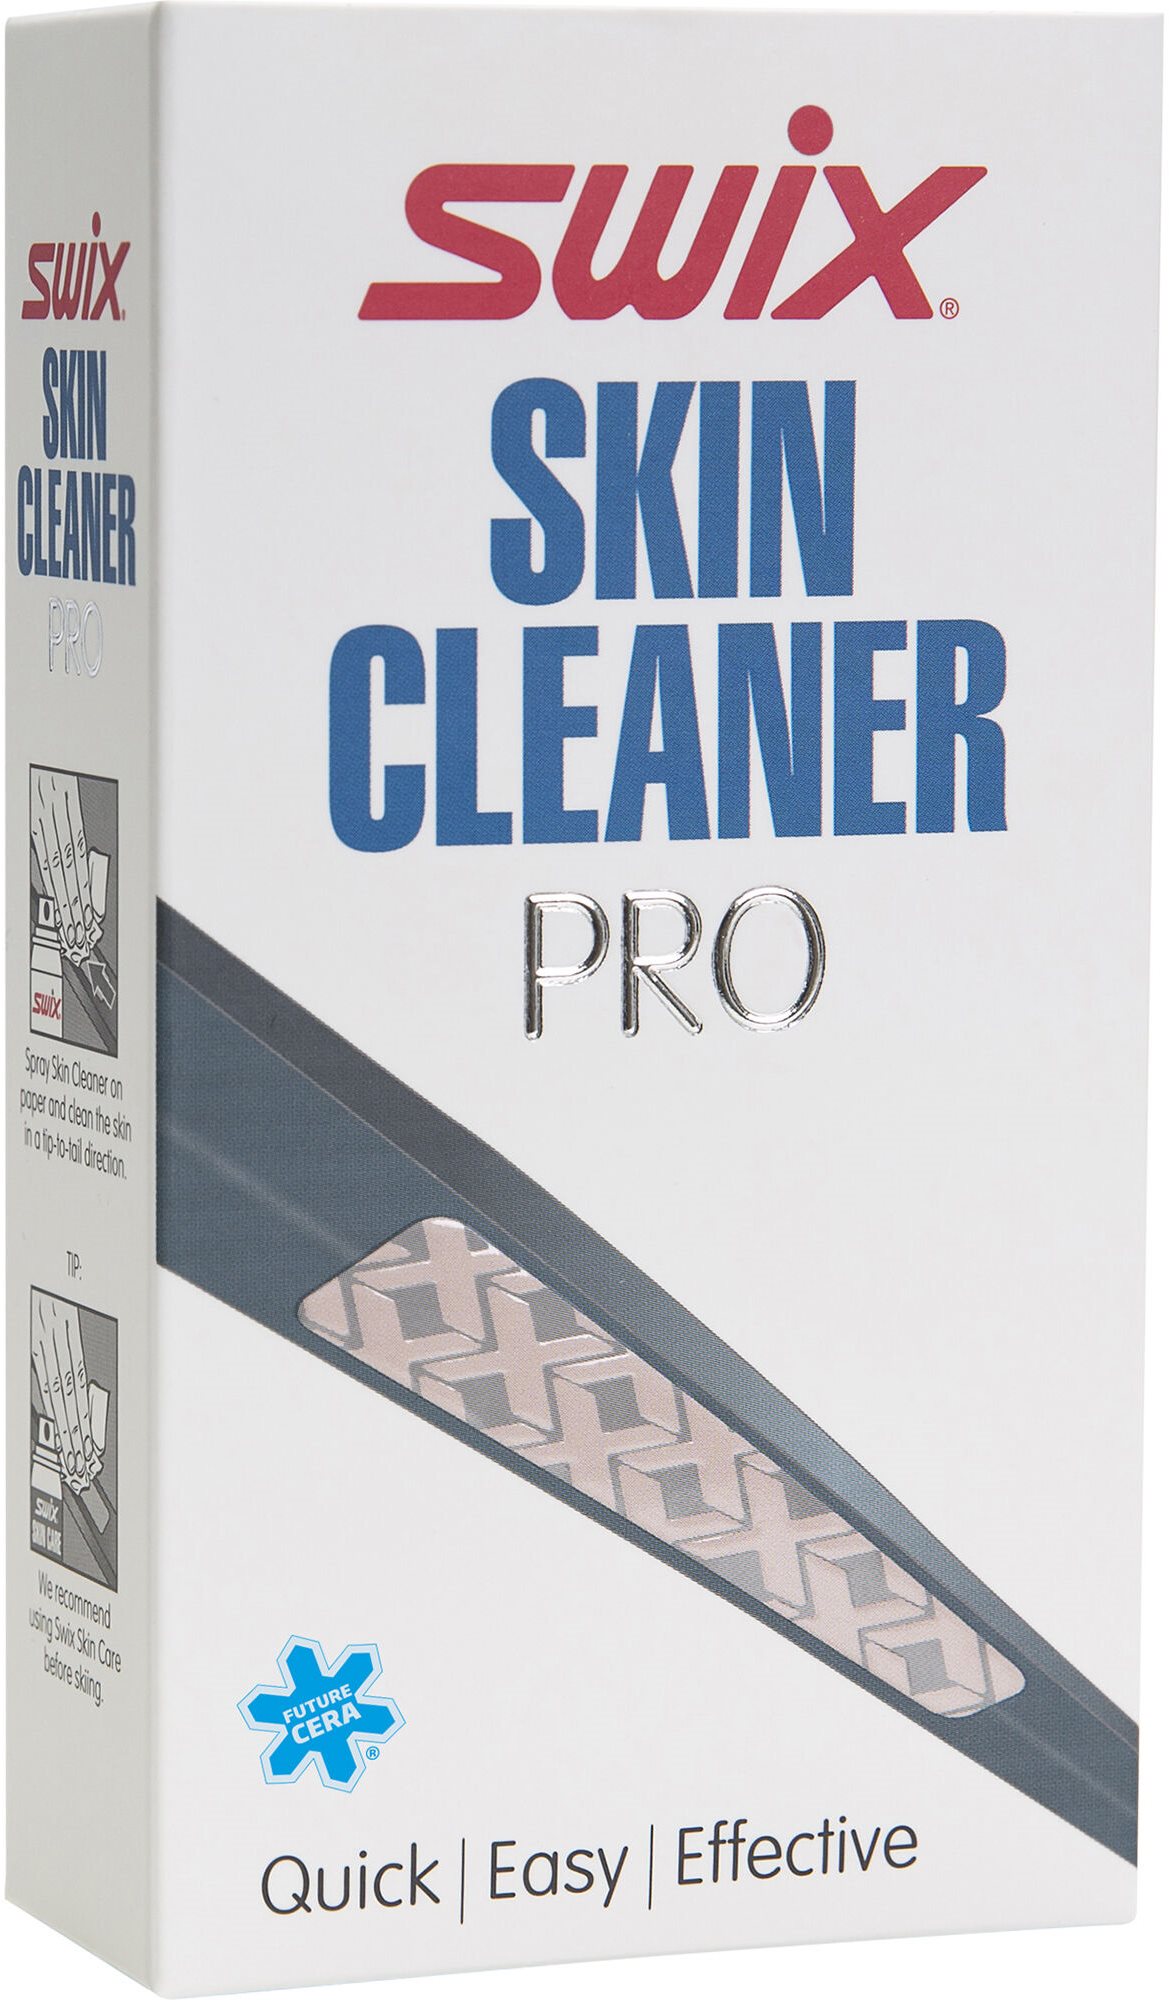 Swix N18 Skin Cleaner Pro, 70 ml